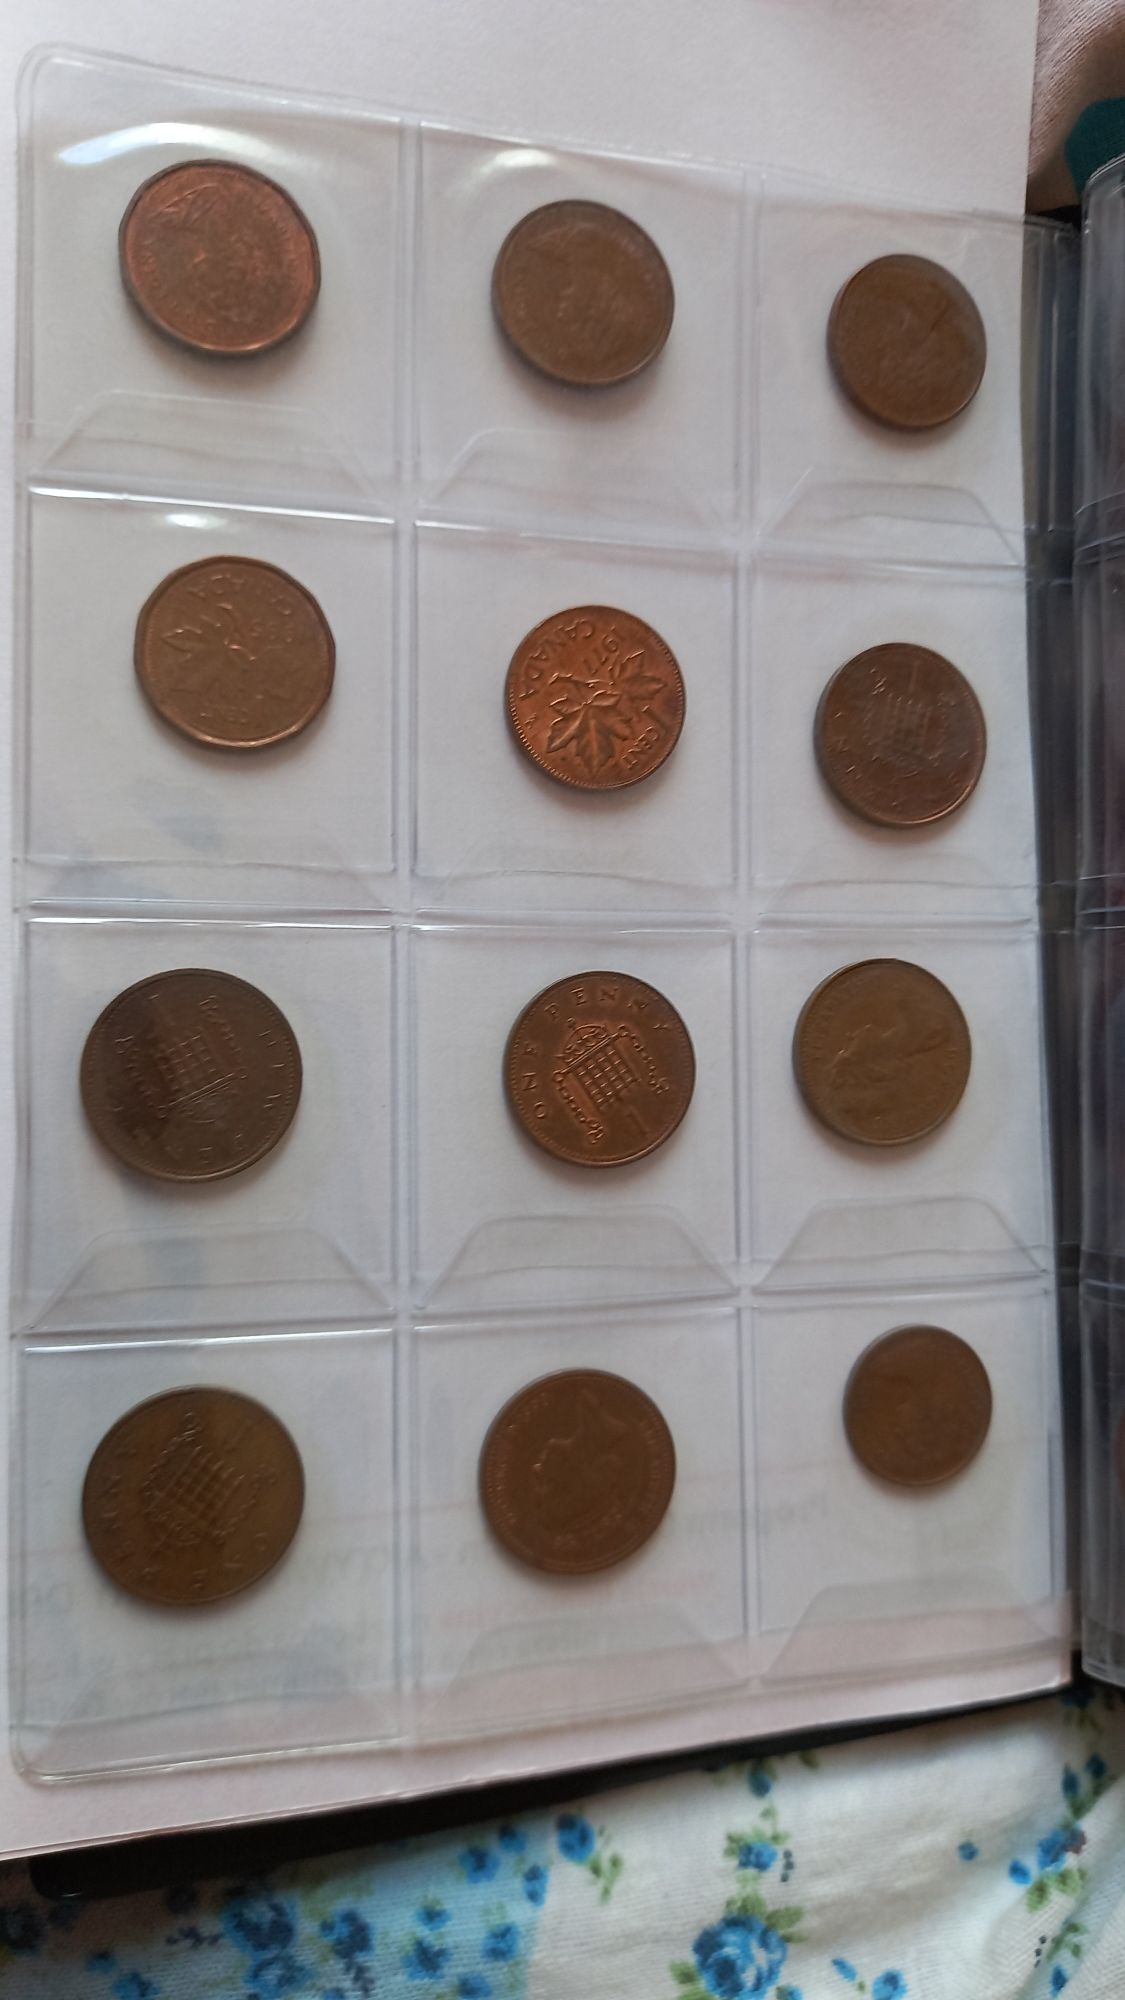 Monet kolekcja monet ze Świata. Kolekcja monet.